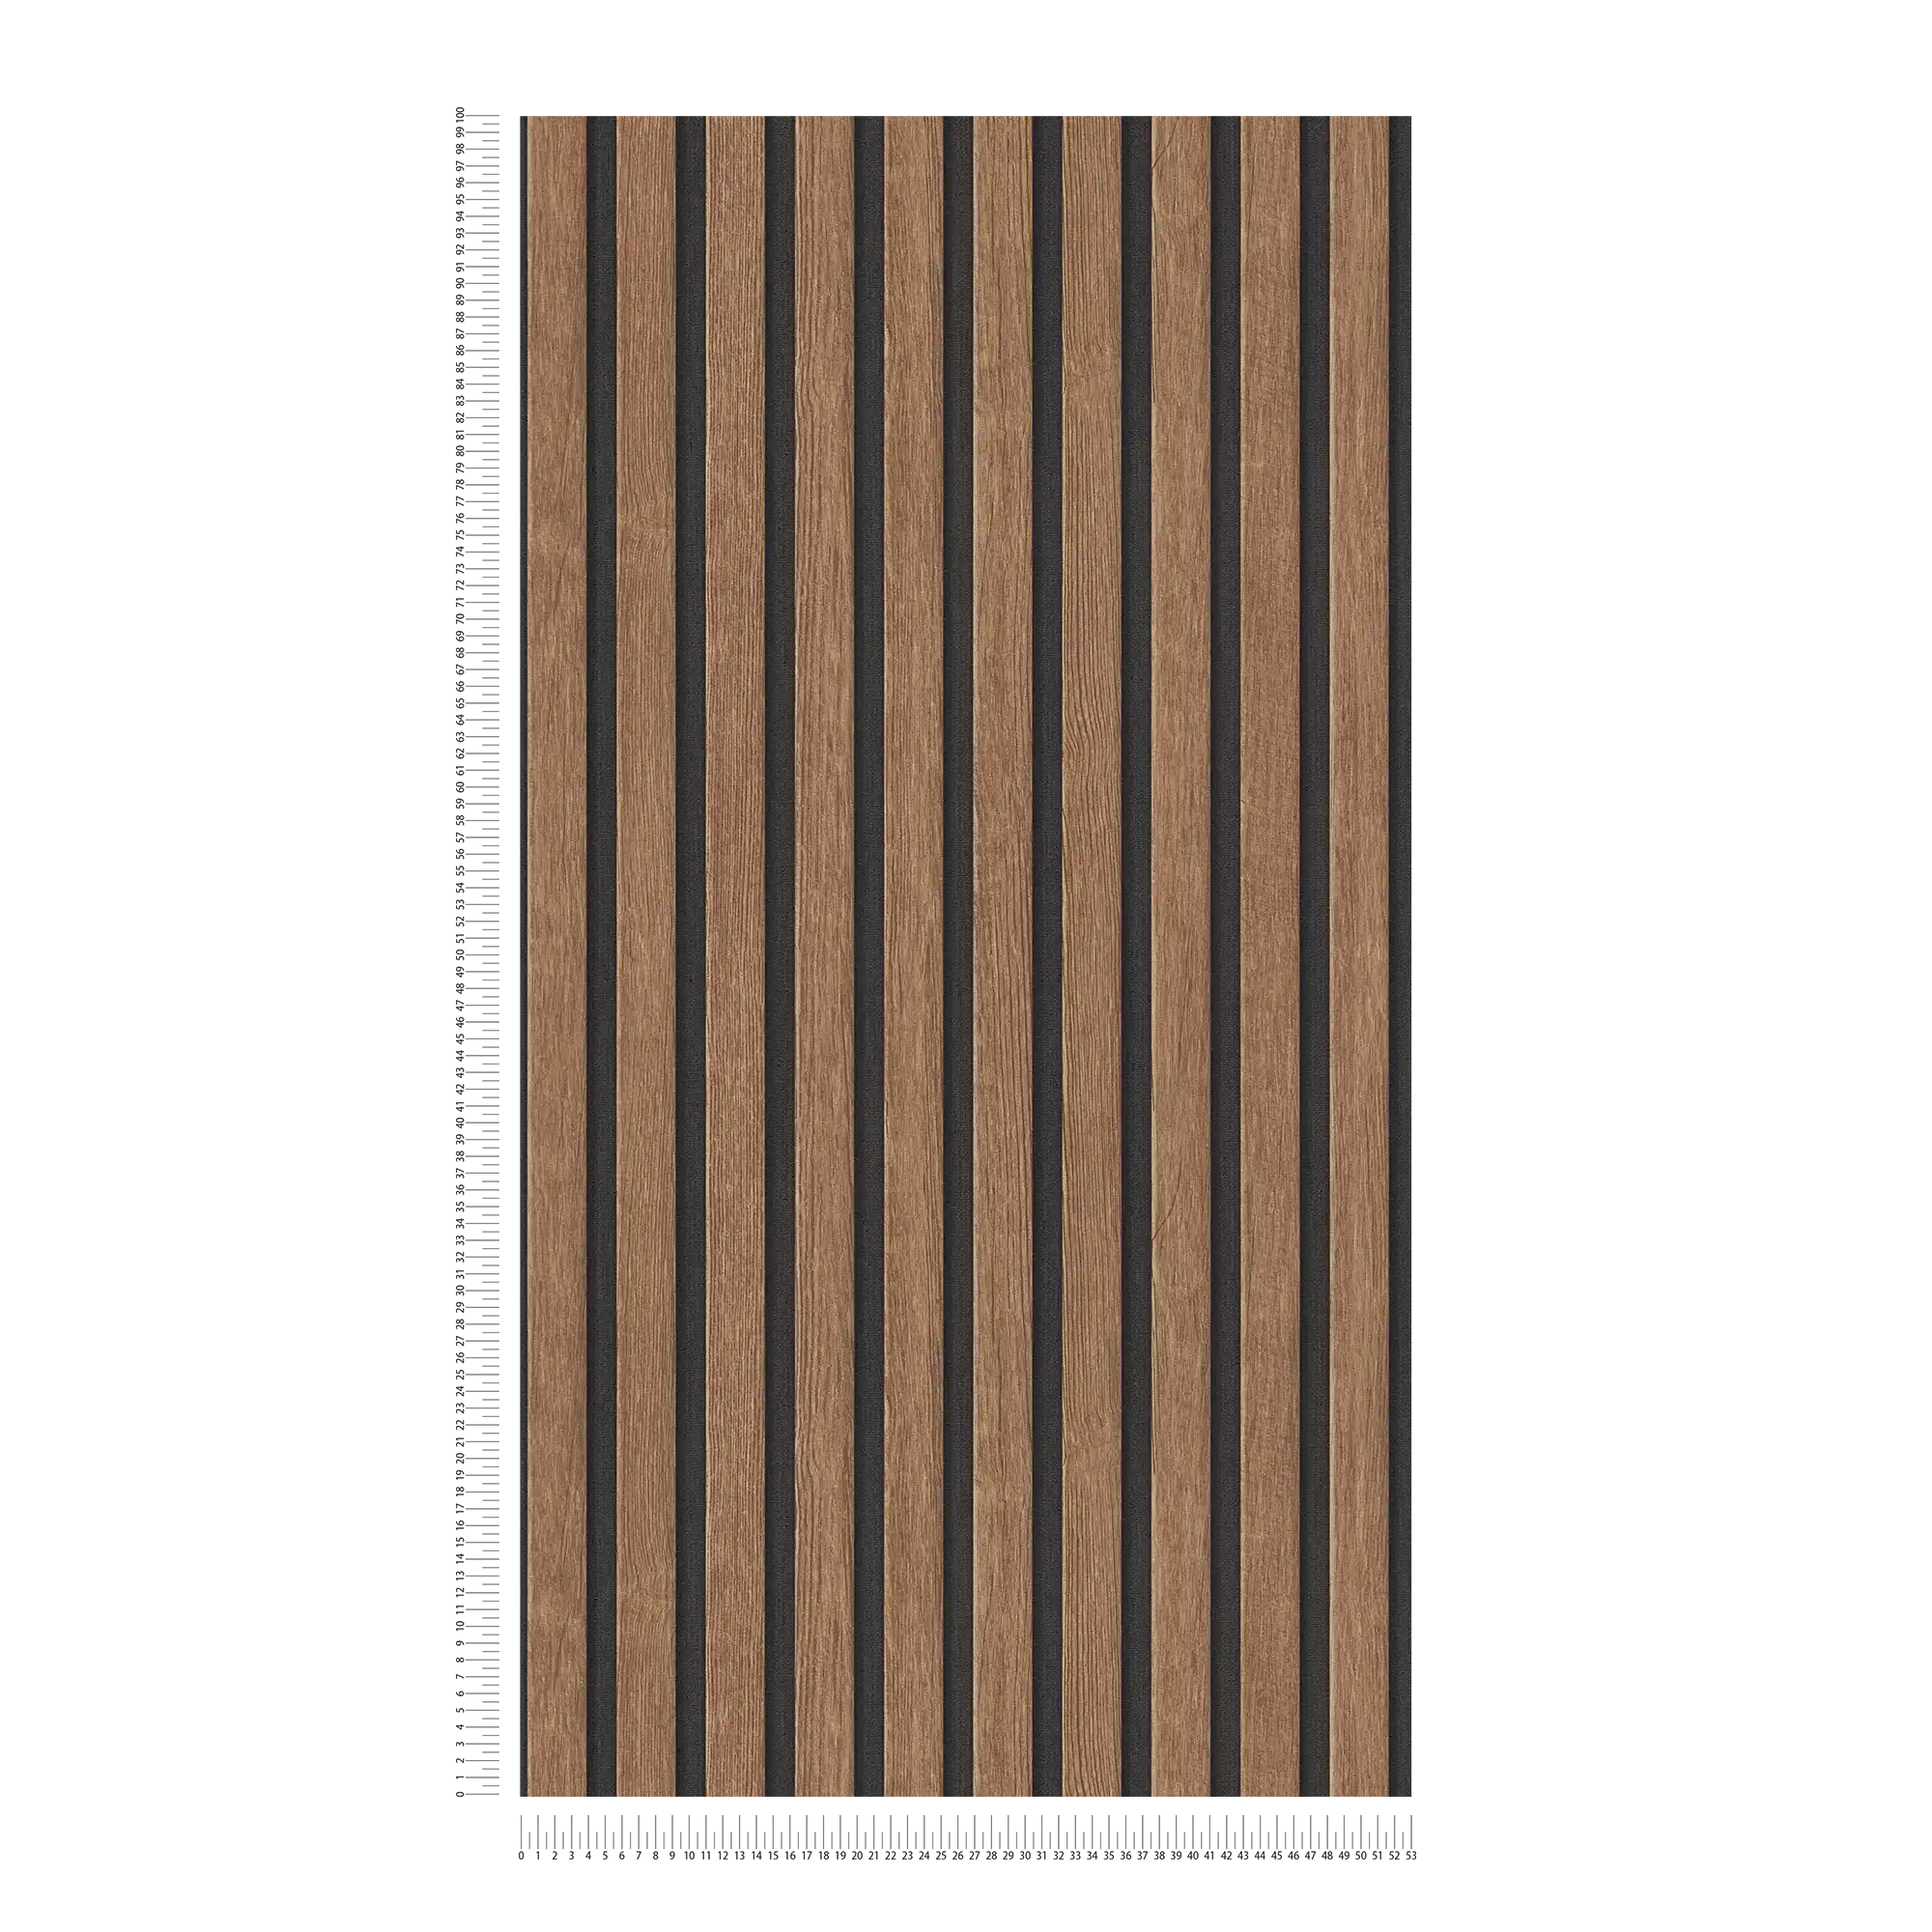             Pannelli acustici Carta da parati in tessuto non tessuto effetto legno realistico - Marrone, Nero
        